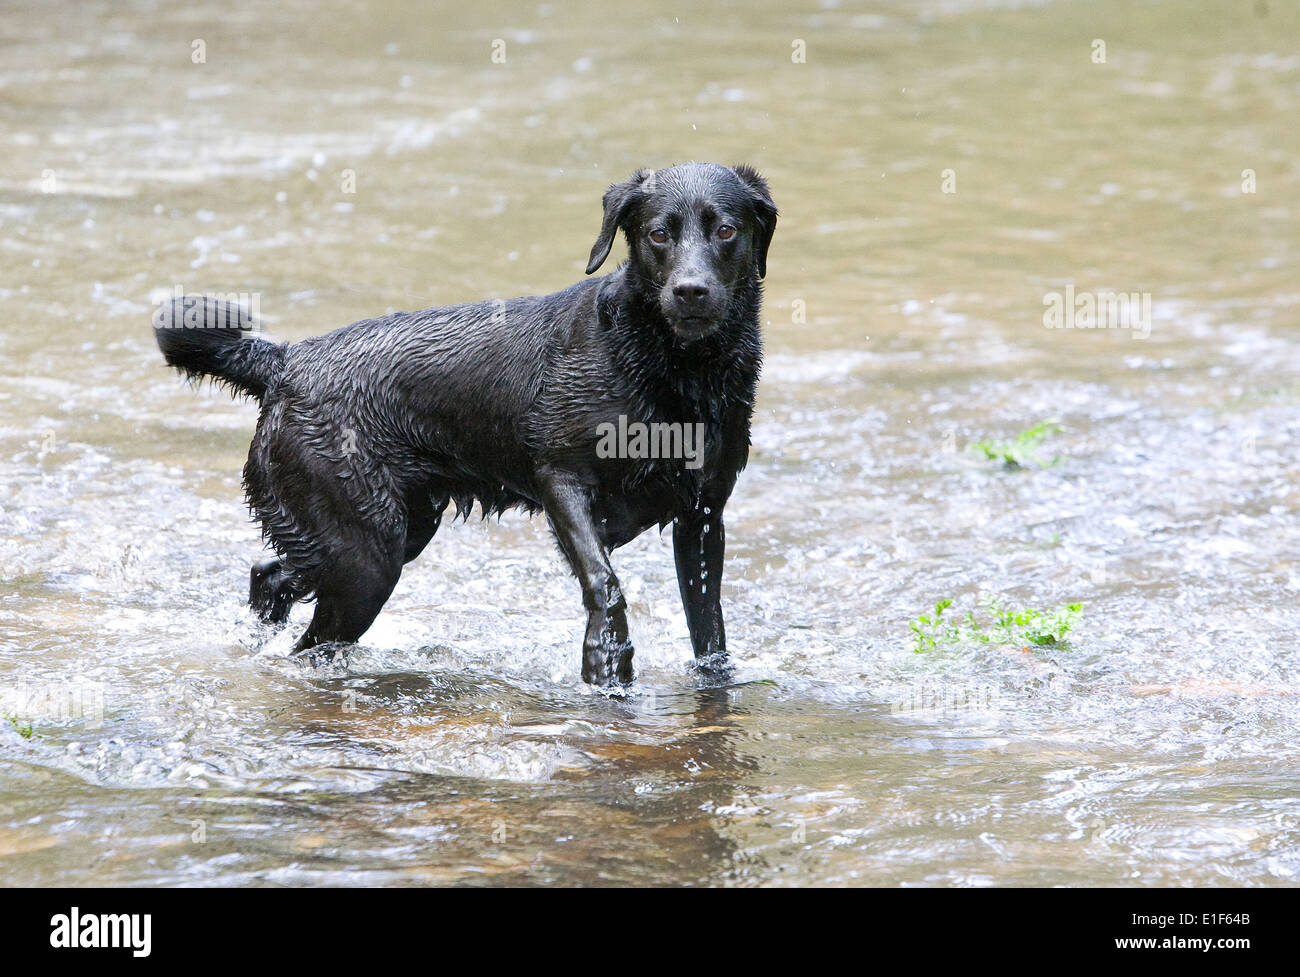 Black Labrador Dog in river water Stock Photo